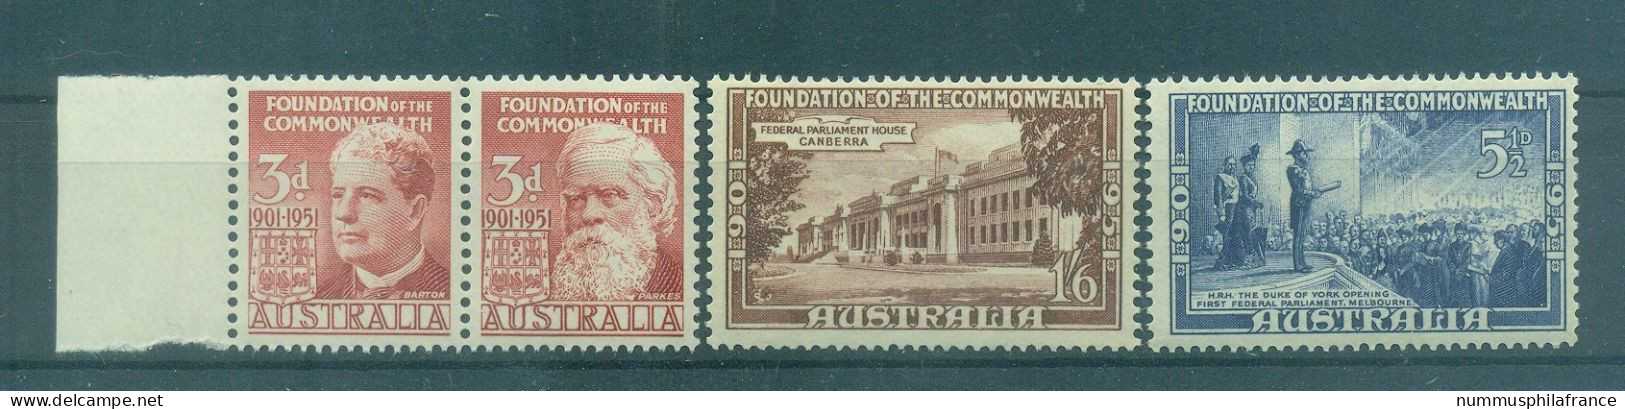 Australie 1951 - Y & T N. 177/80 - Commonwealth En Australie (Michel N. 209/12) - Mint Stamps